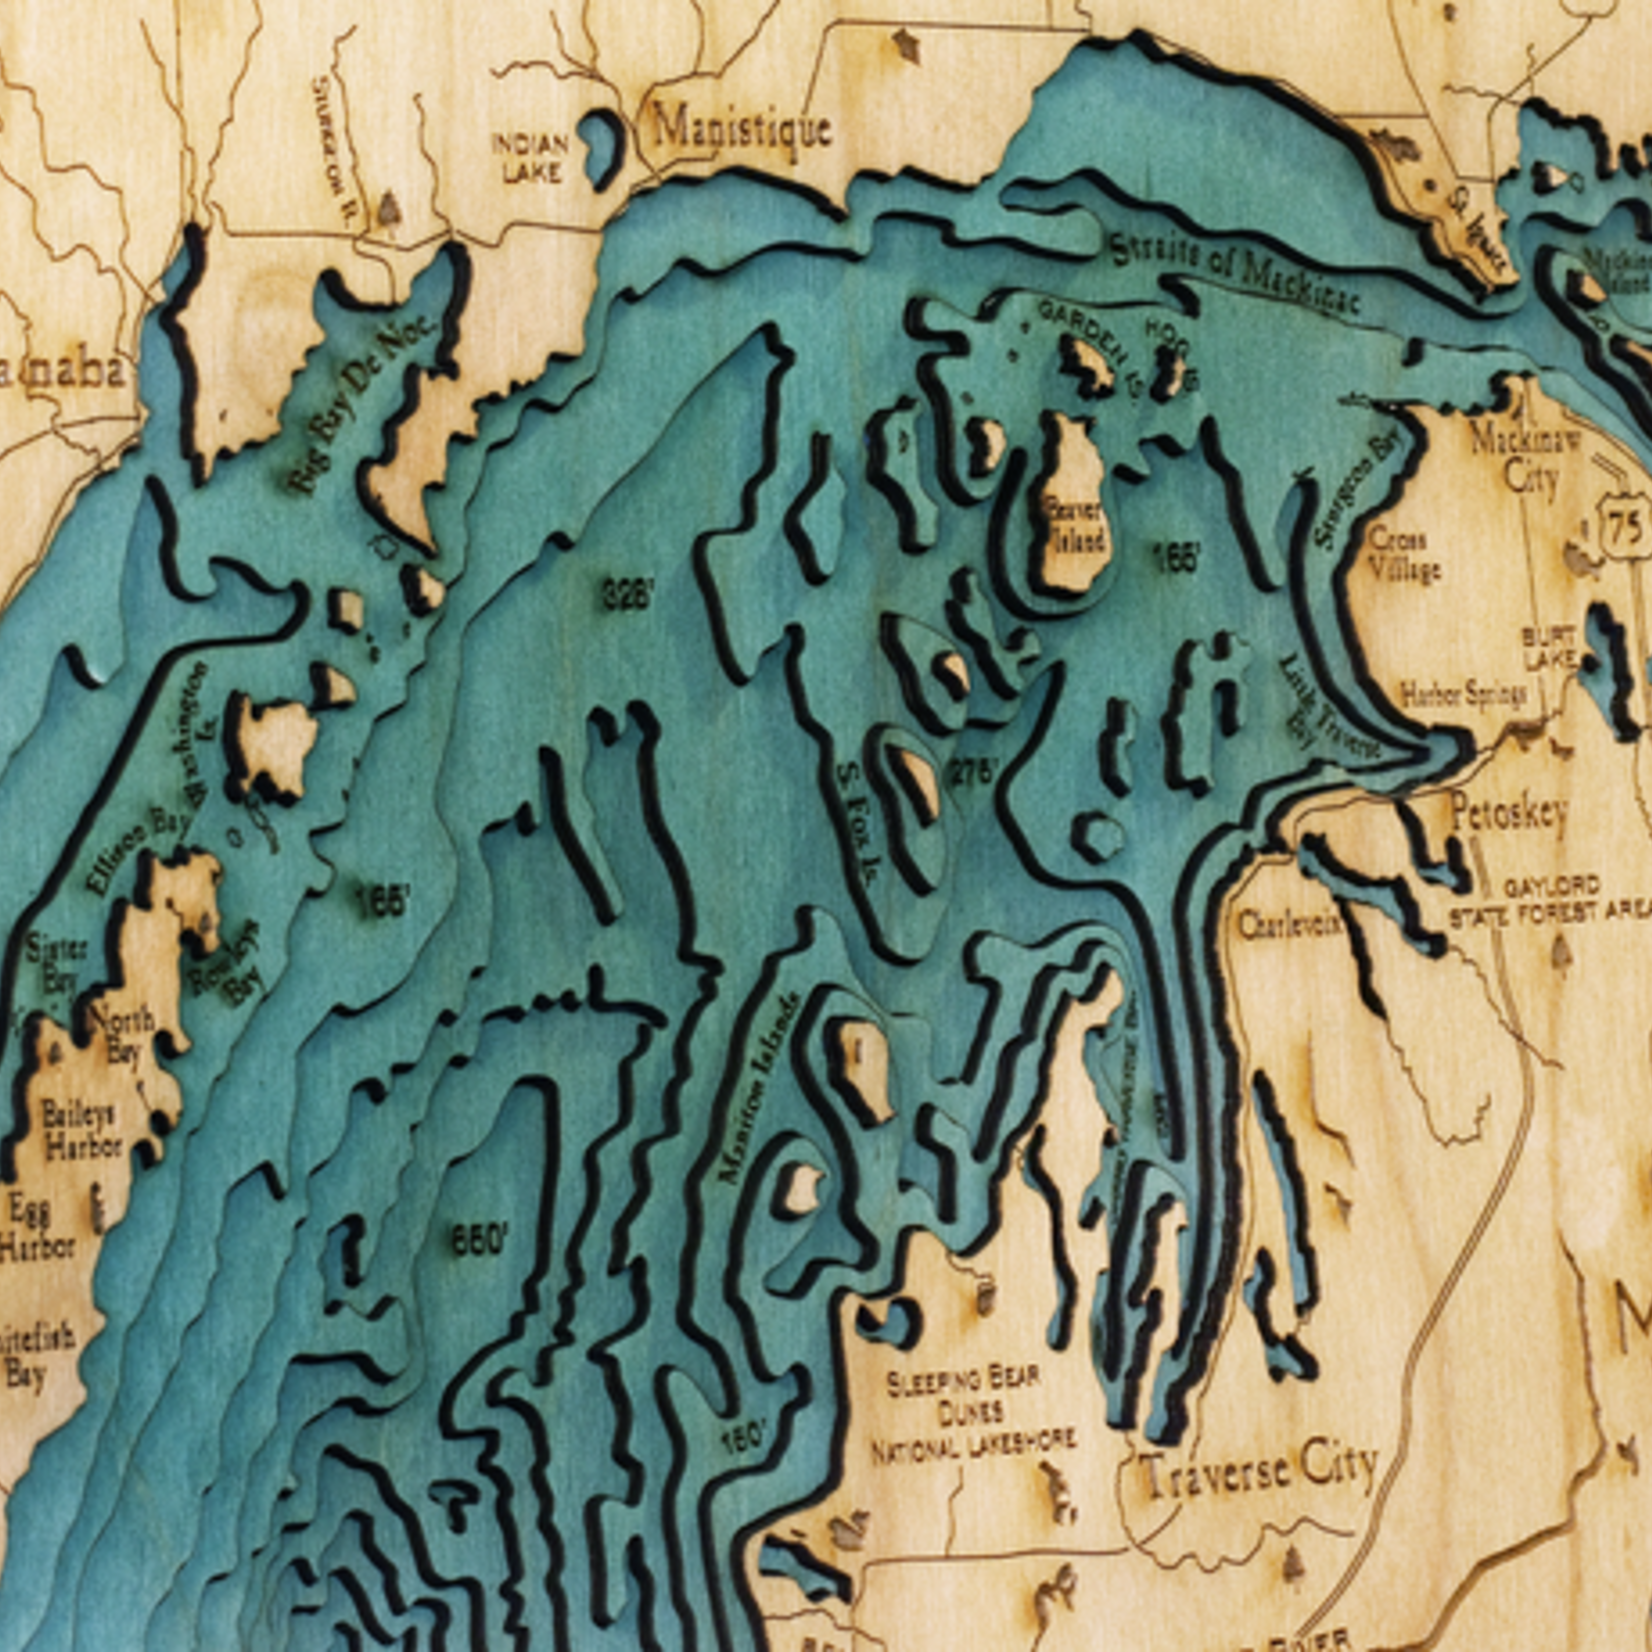 WoodChart Great Lakes (Lg Bathymetric 3-D Nautical WOODCHART)